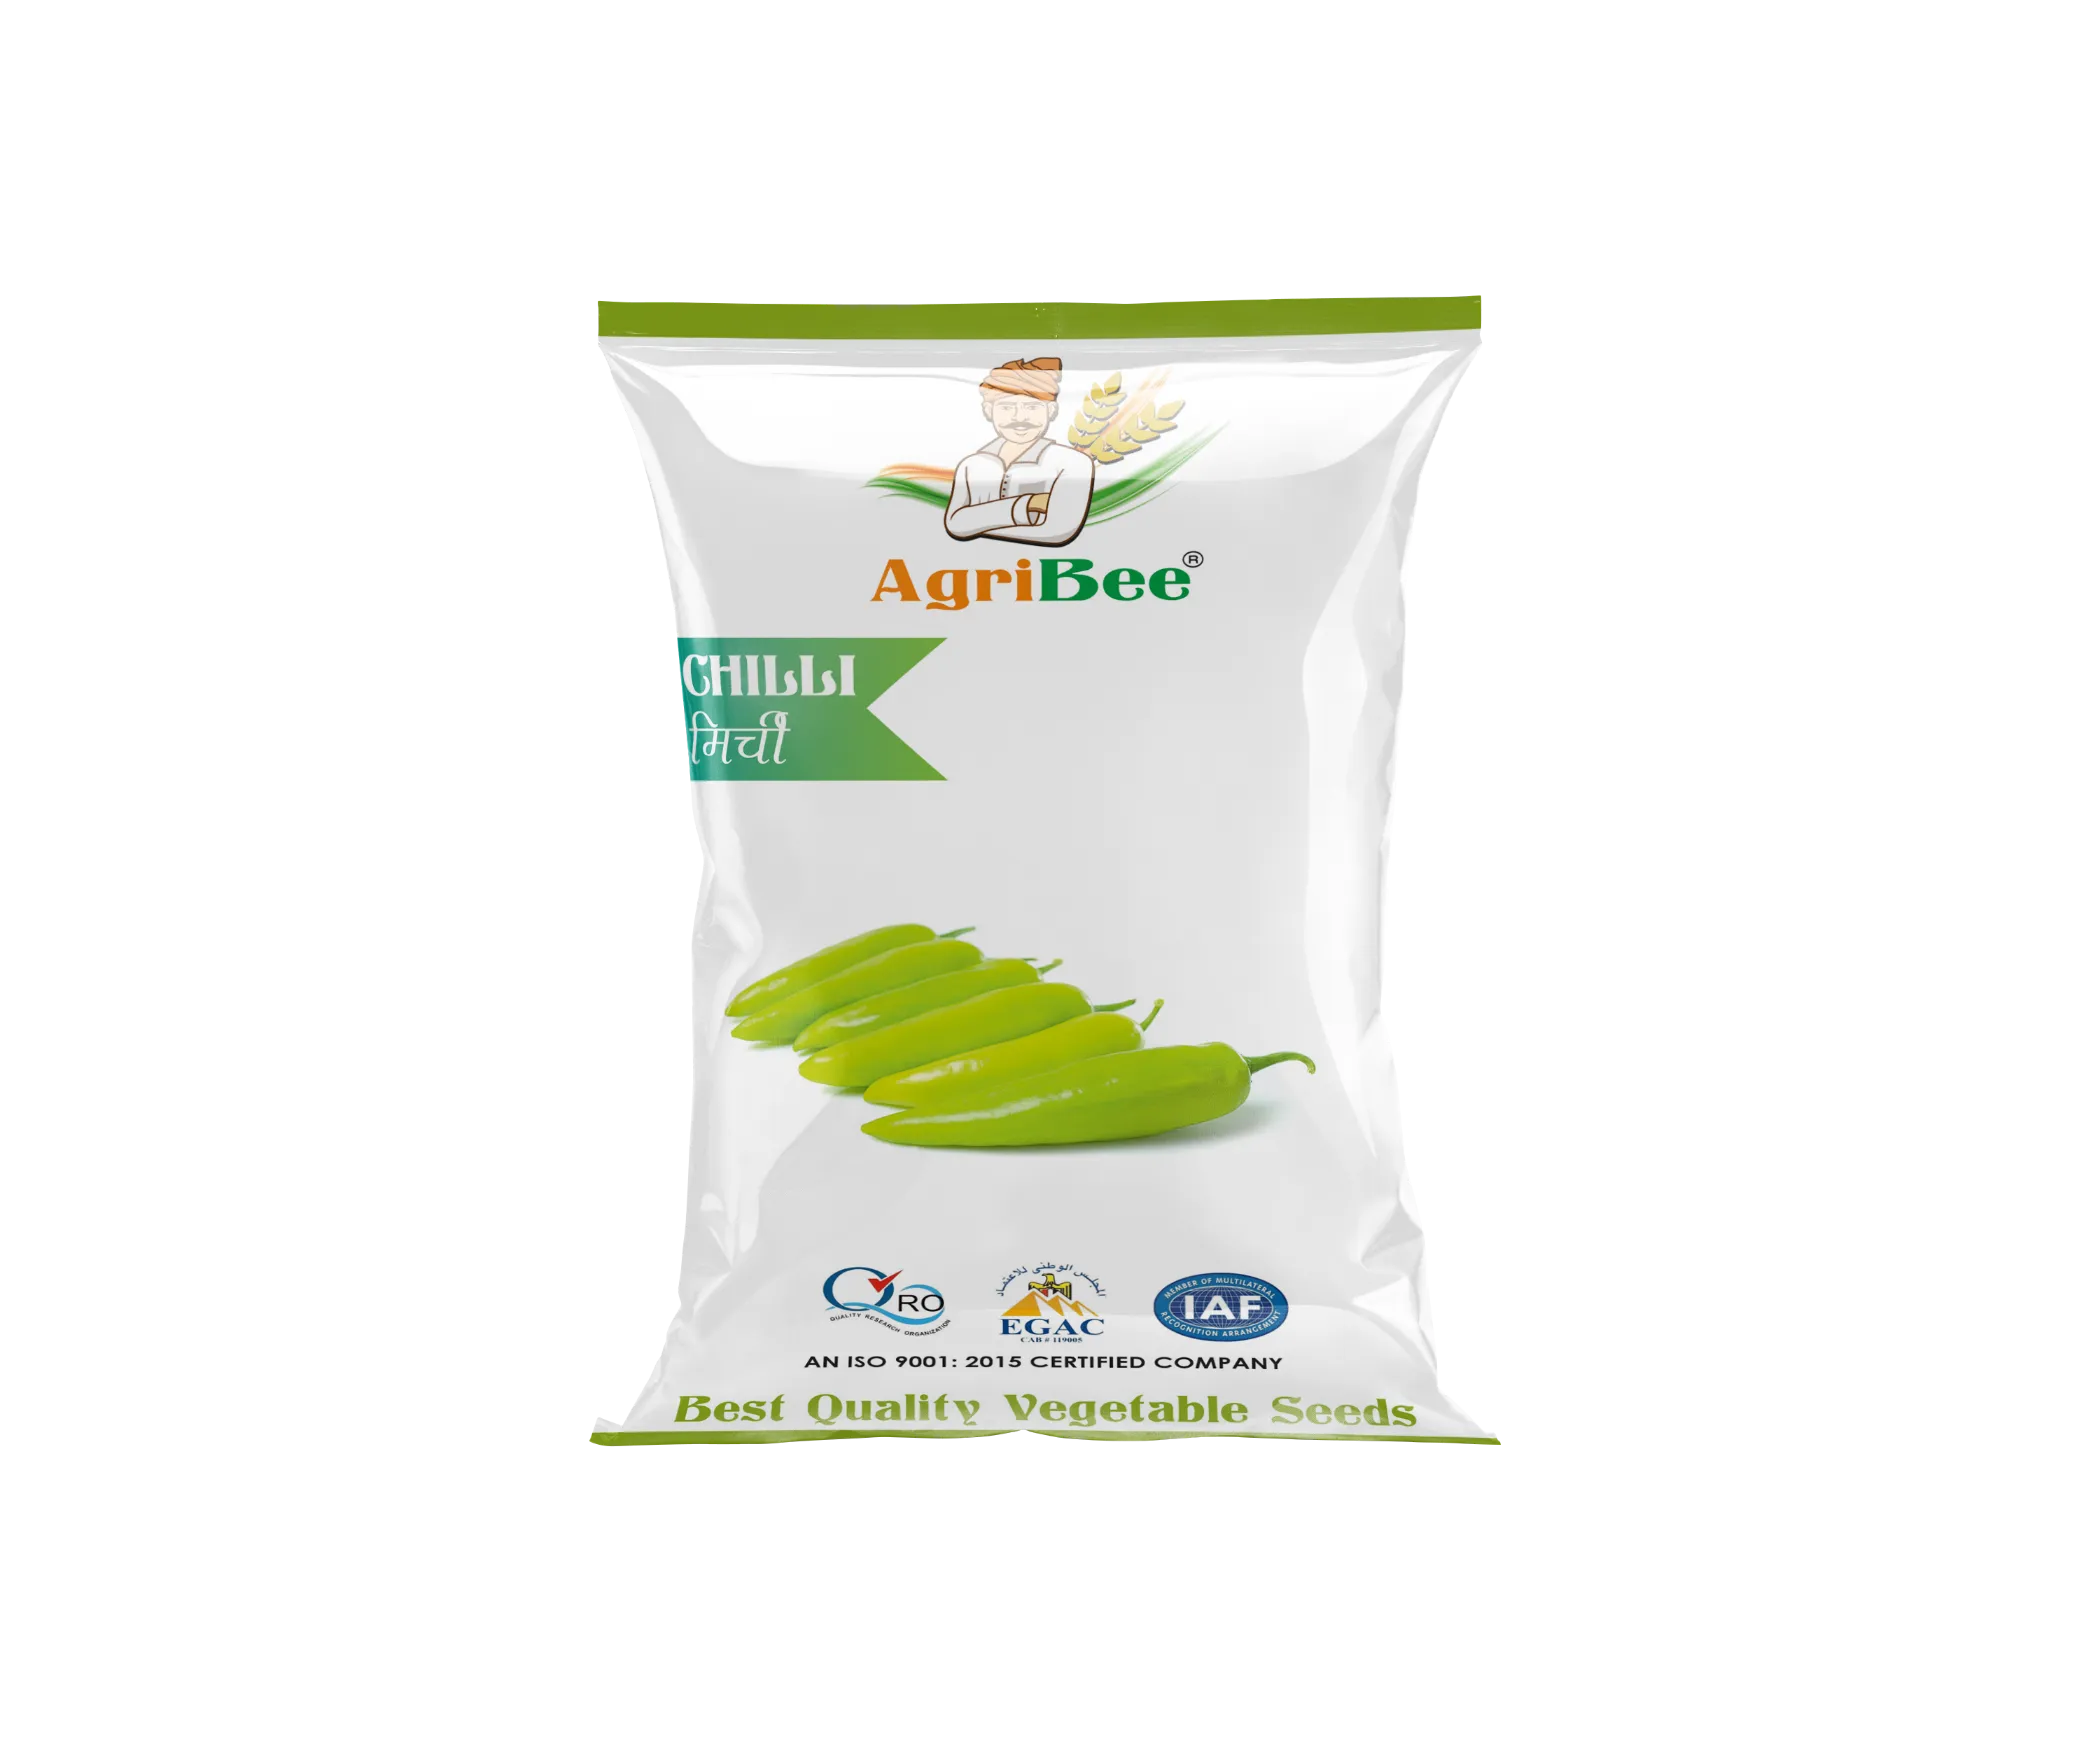 AgriBee Seeds Pvt Ltd Chilli